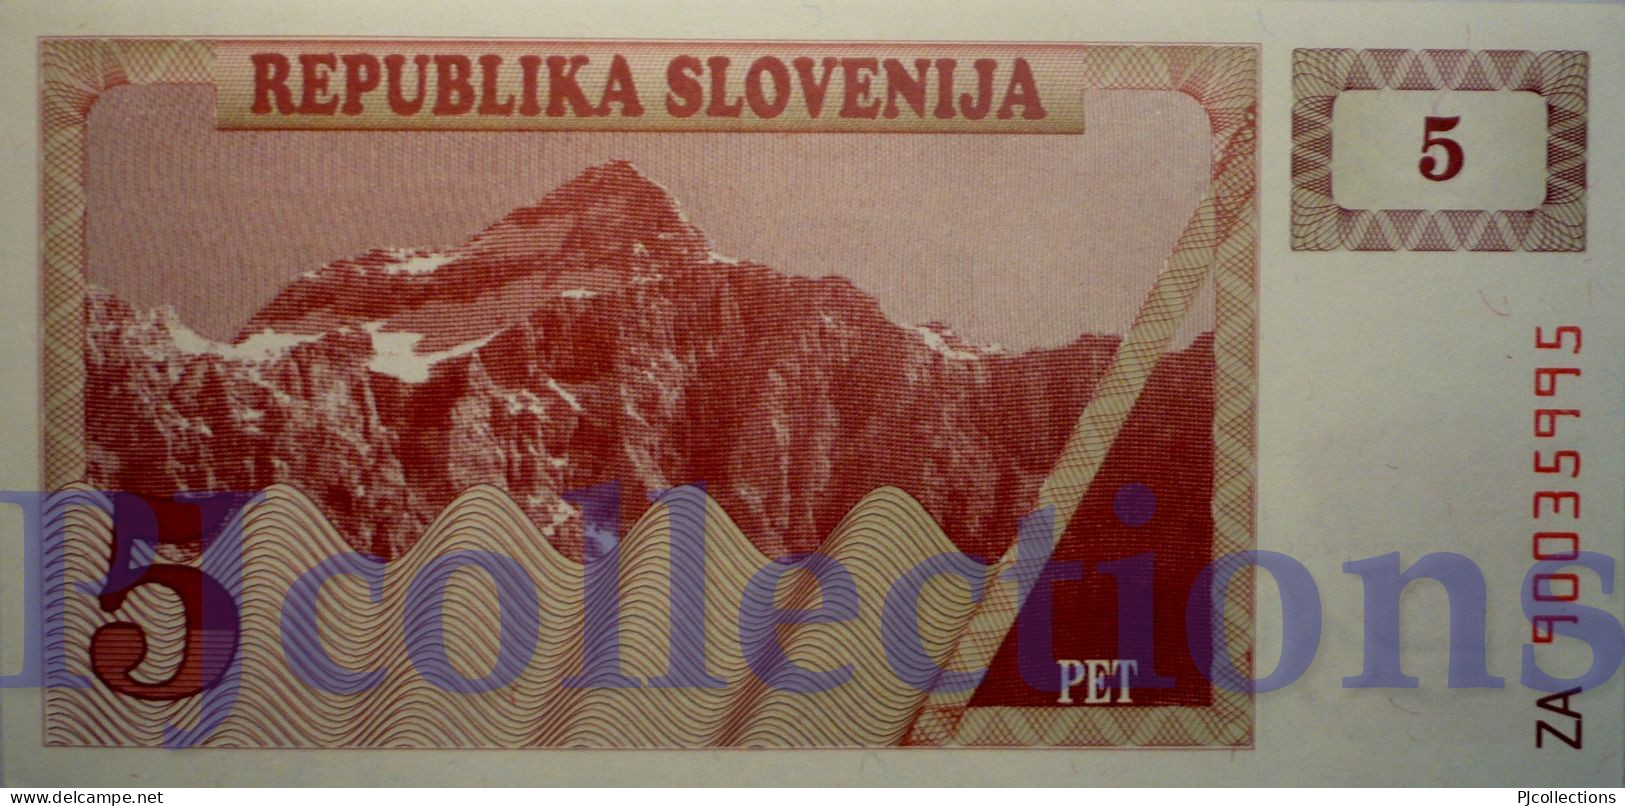 SLOVENIA 5 TOLARJEV 1990 PICK 3a REPLACEMENT UNC RARE - Slovenia